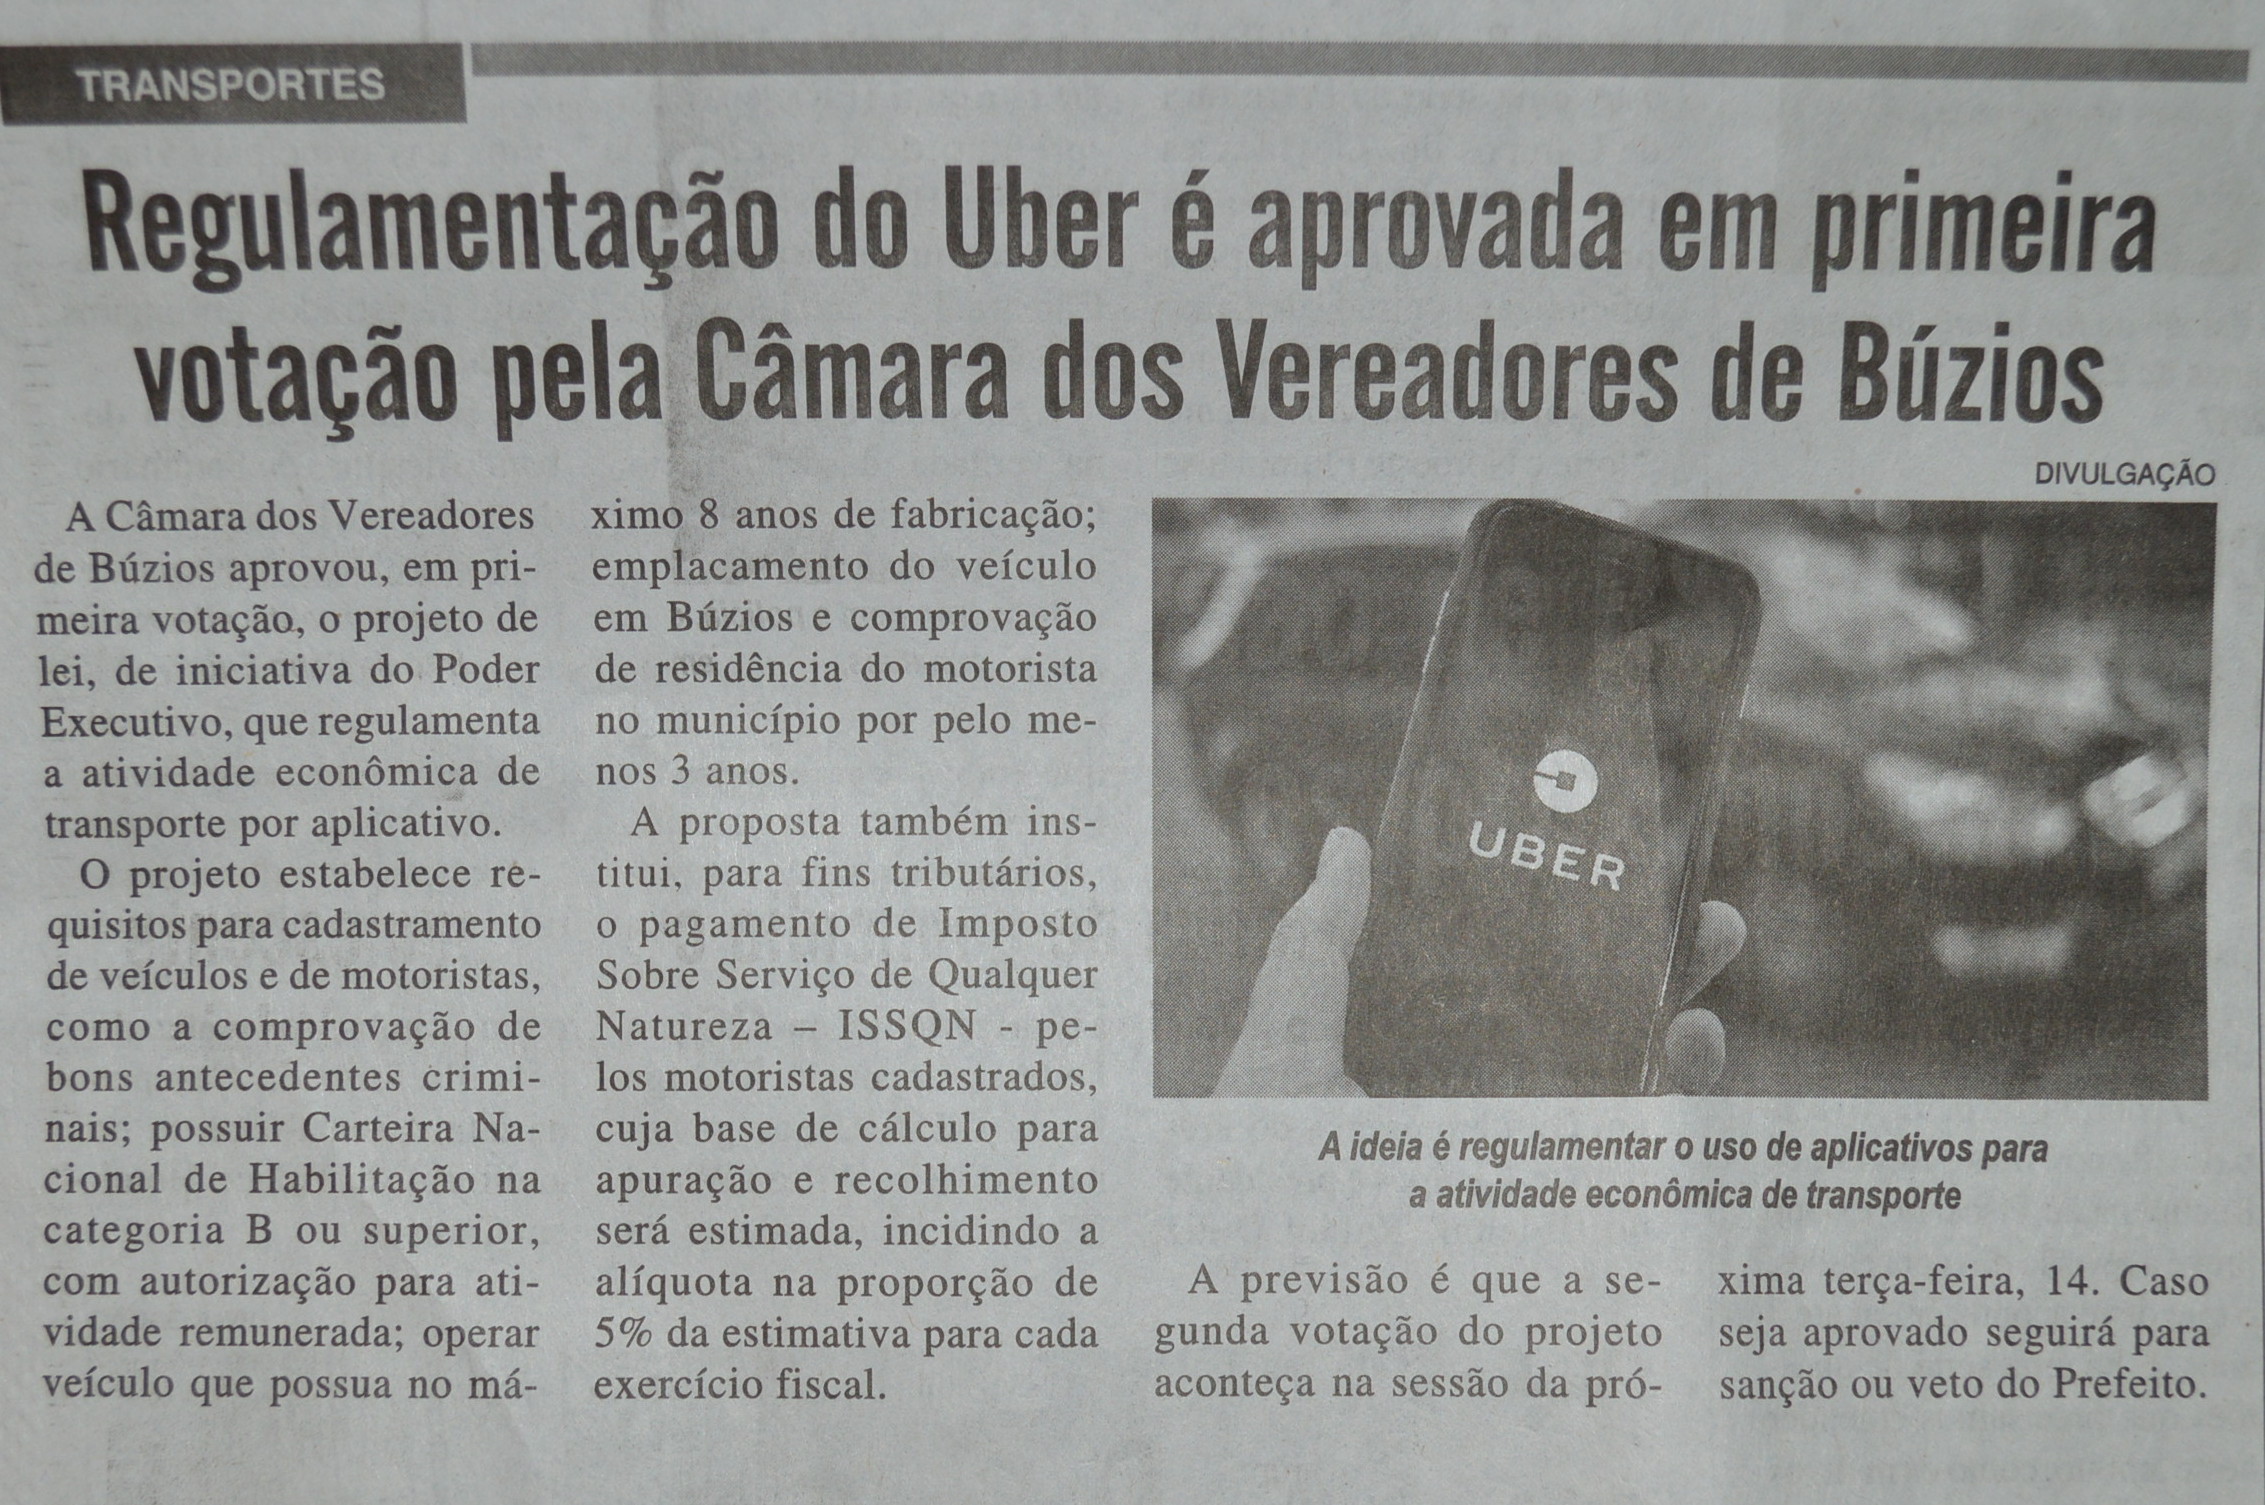 Diário Costa do Sol_Regulamentação Uber_1 turno_11 a 13 maio19